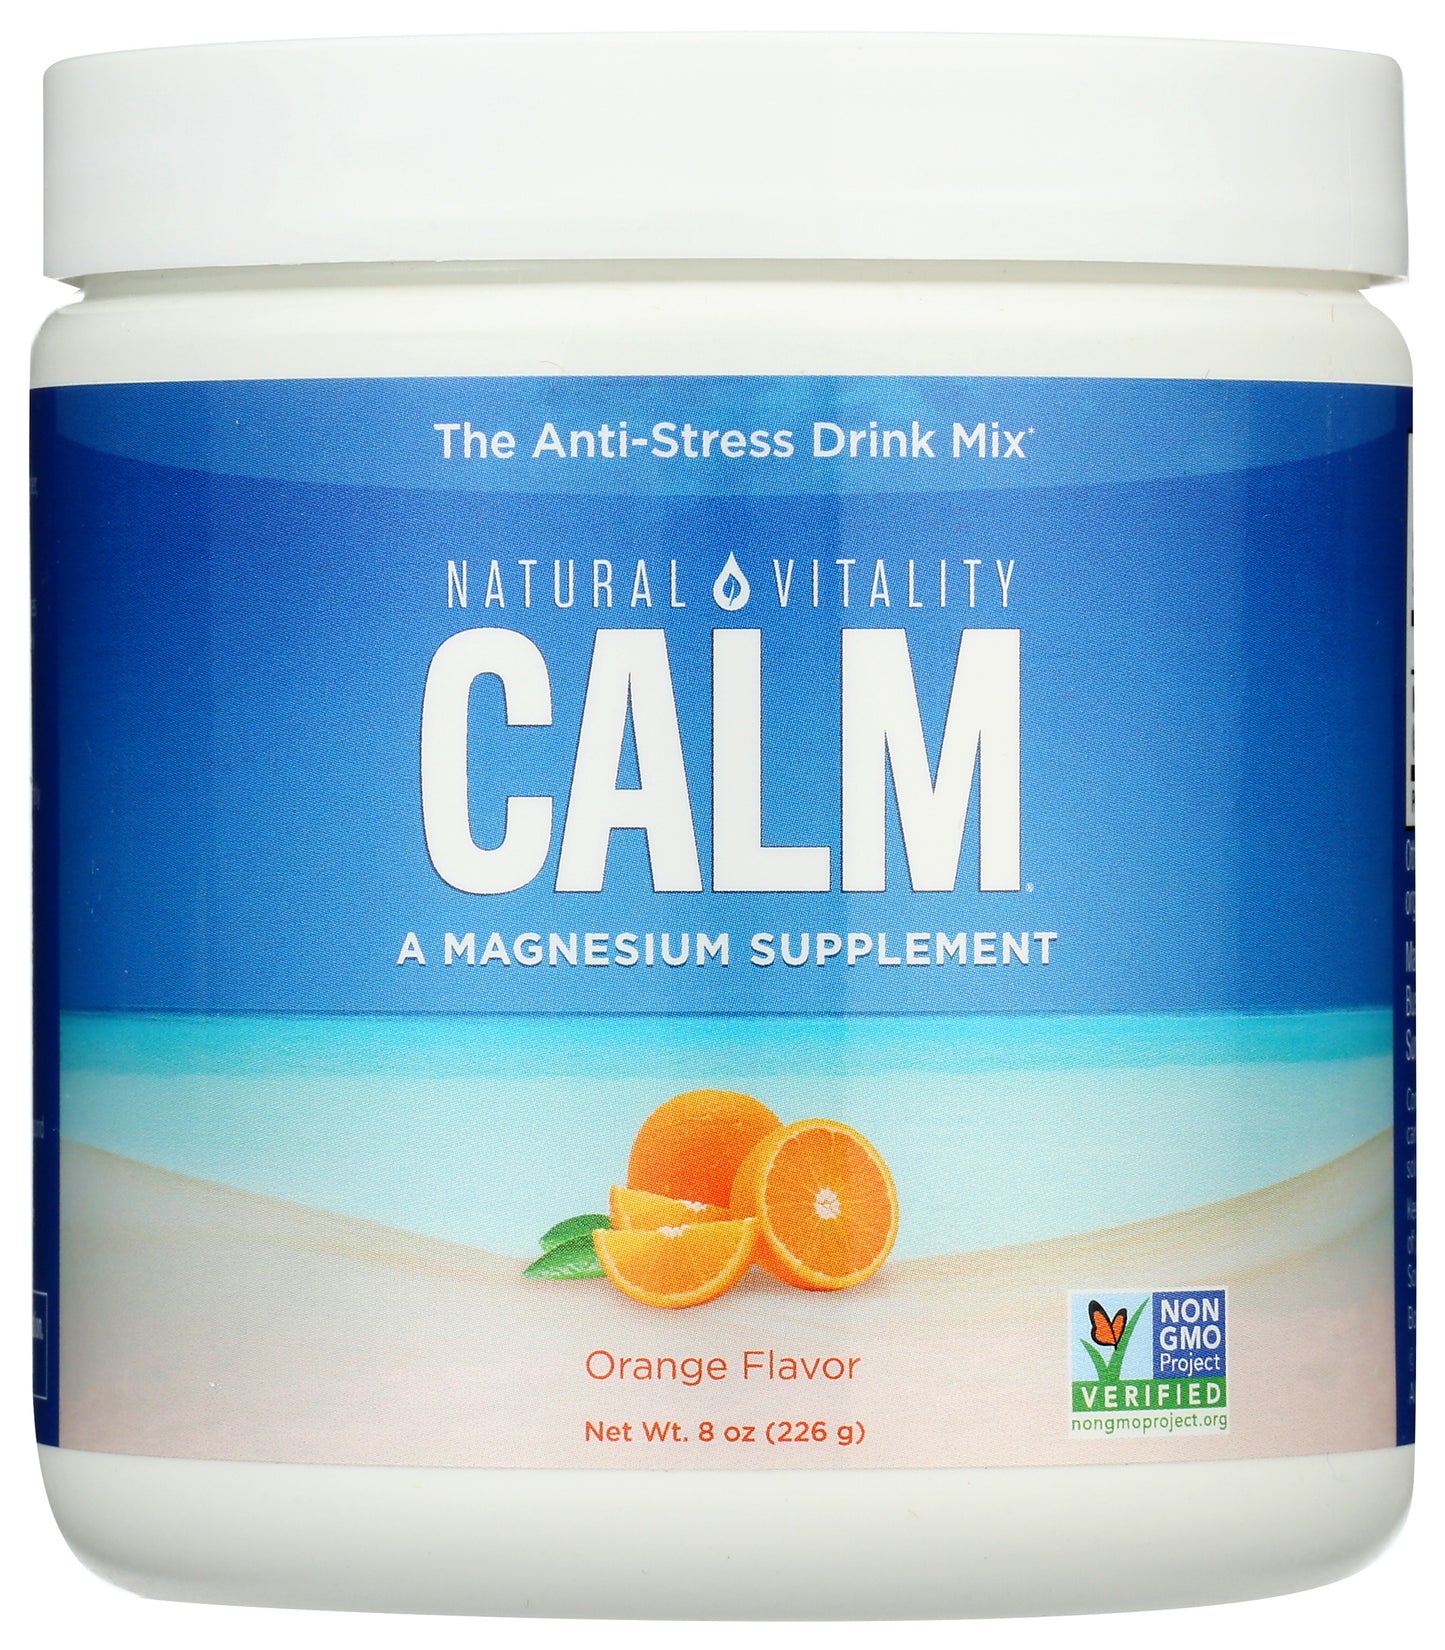 Natural Vitality Calm Magnesium Supplement Orange Flavor 8oz